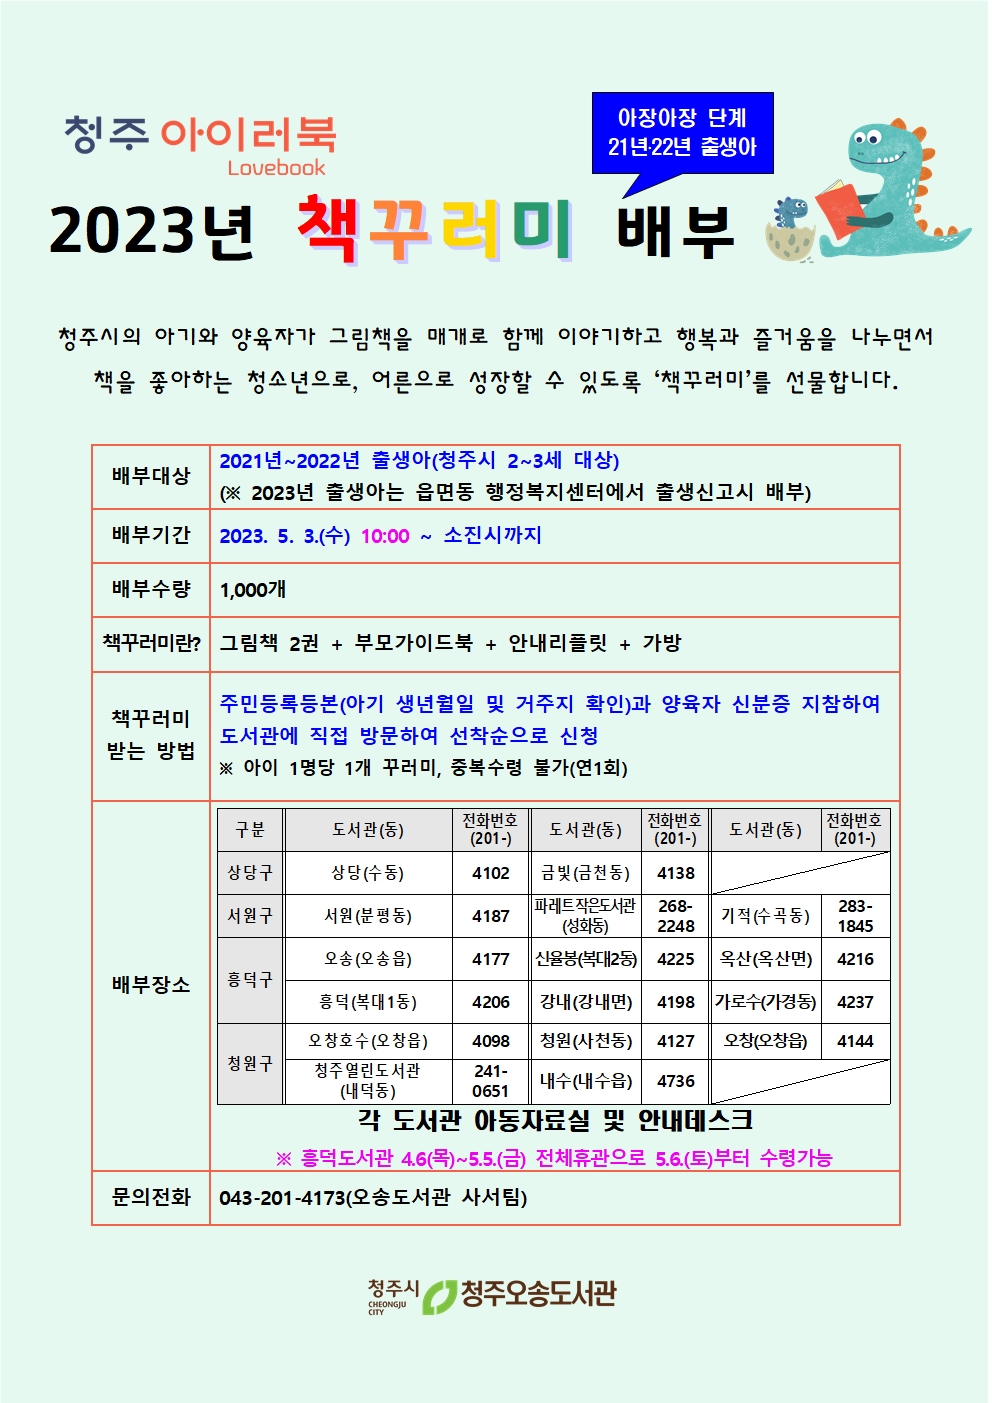 [청주 아이러북] 2023년 2-3세 대상 '아장아장' 책꾸러미 배부 안내(5.3.~소진시)